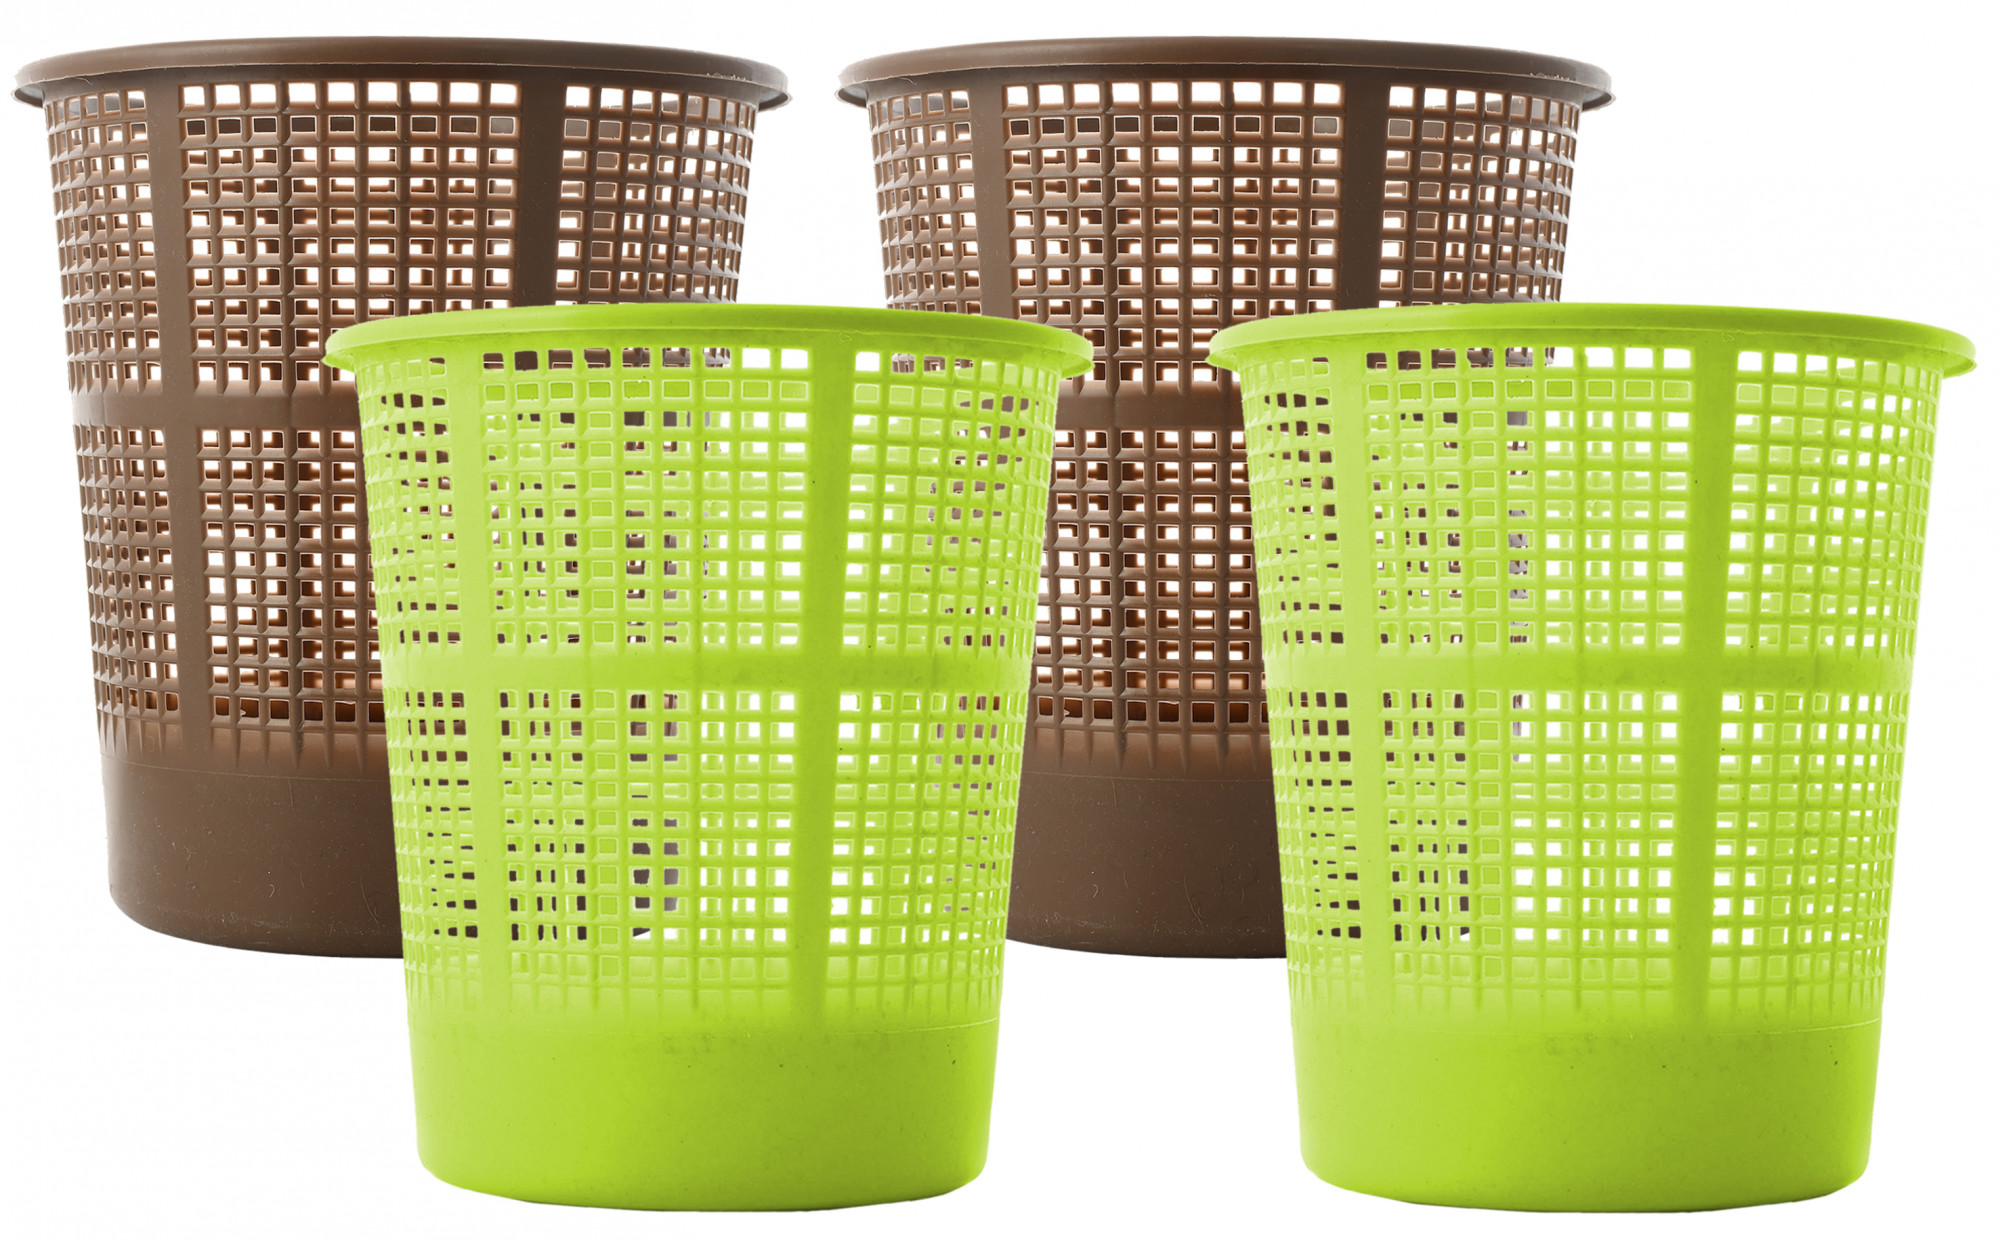 Kuber Industries Plastic Mesh Dustbin Garbage Bin for Office use, School, Bedroom,Kids Room, Home, Multi Purpose,5 Liters (Brown & Green)-KUBMART256